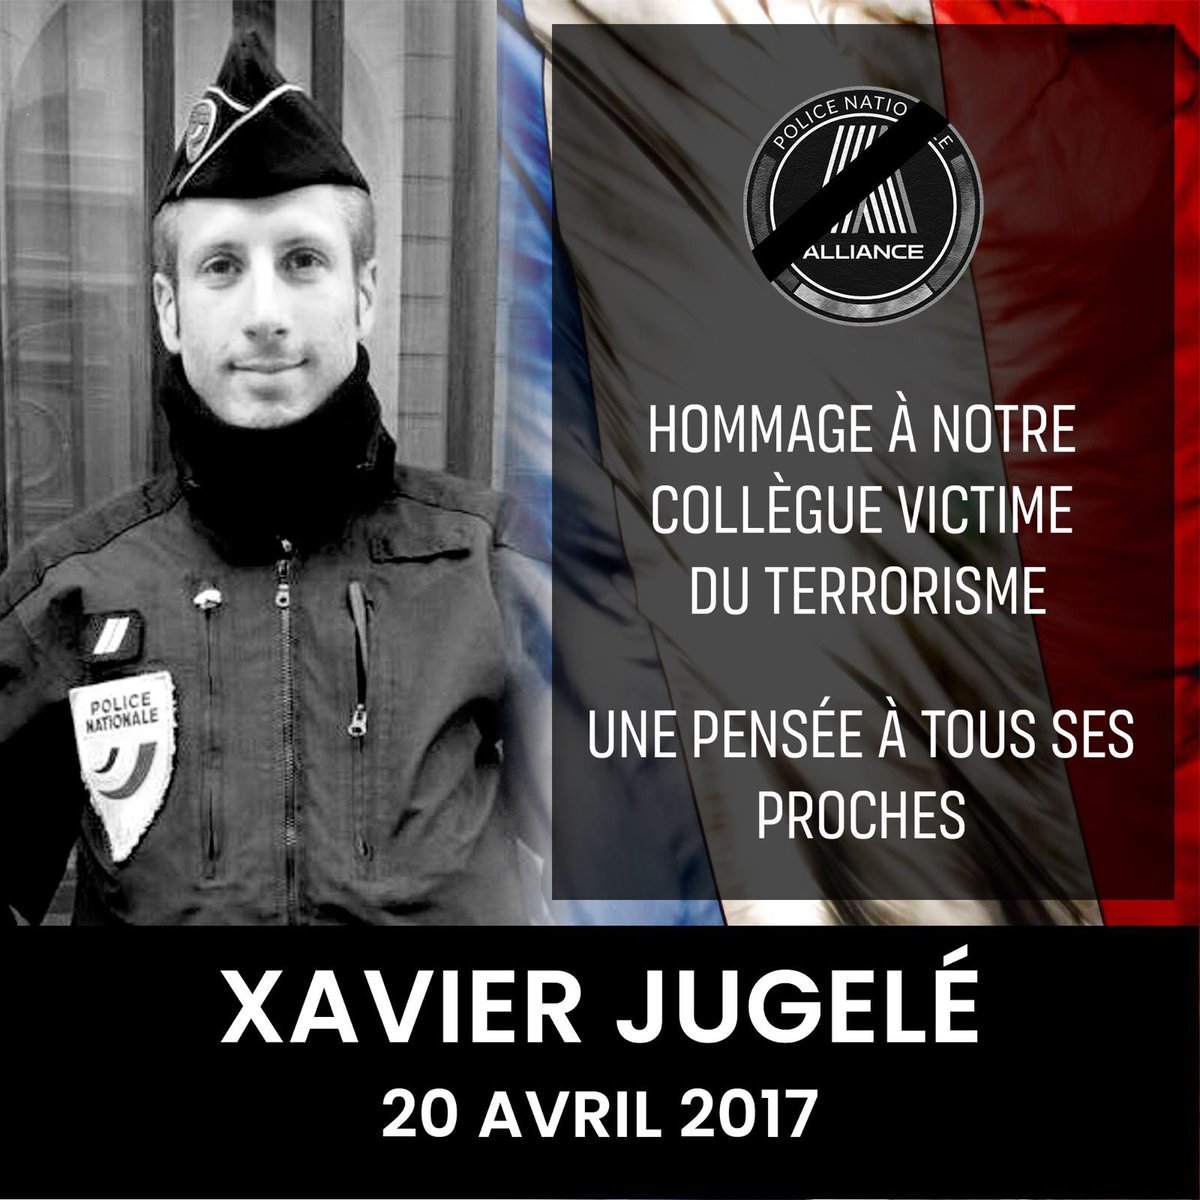 7 ans jour pour jour aujourd’hui.

Jamais nous n’oublierons la date du 20 avril 2017 et le lâche assassinat islamiste de notre collègue Xavier #Jugelé aux #ChampsElysee à #Paris.

Hommage et pensées sincères. 🙏

#DevoirDeMémoire